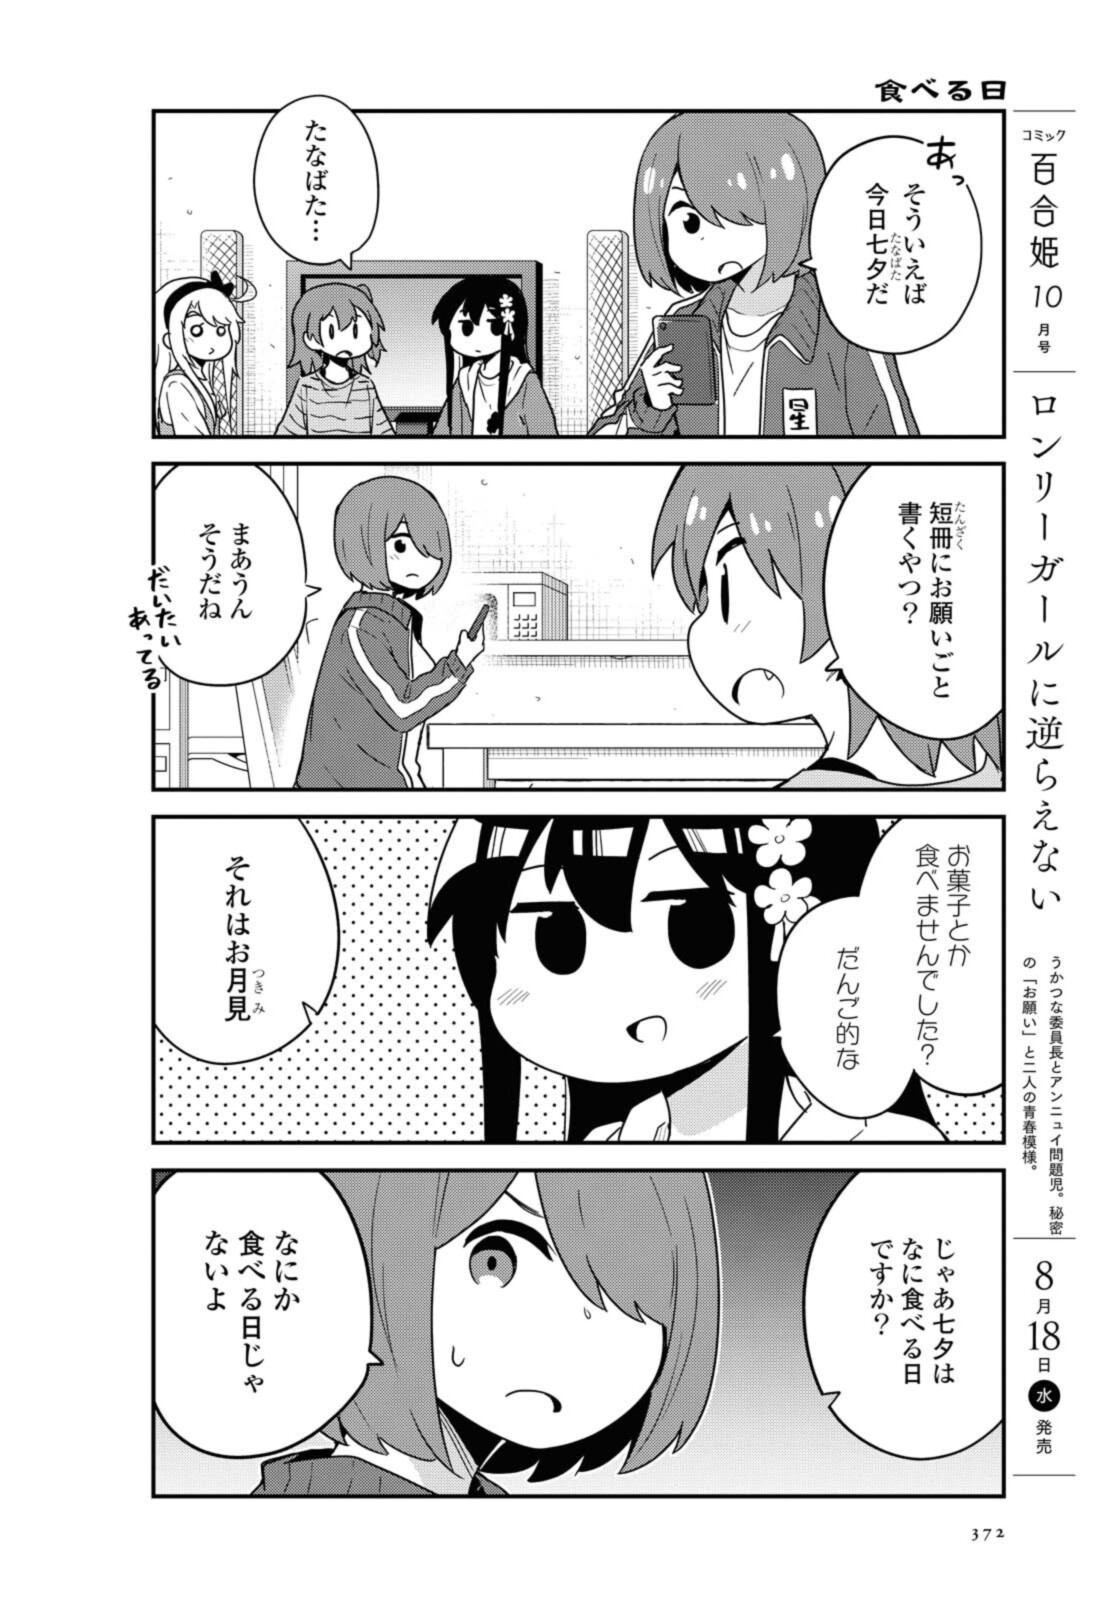 Watashi ni Tenshi ga Maiorita! - Chapter 85 - Page 2